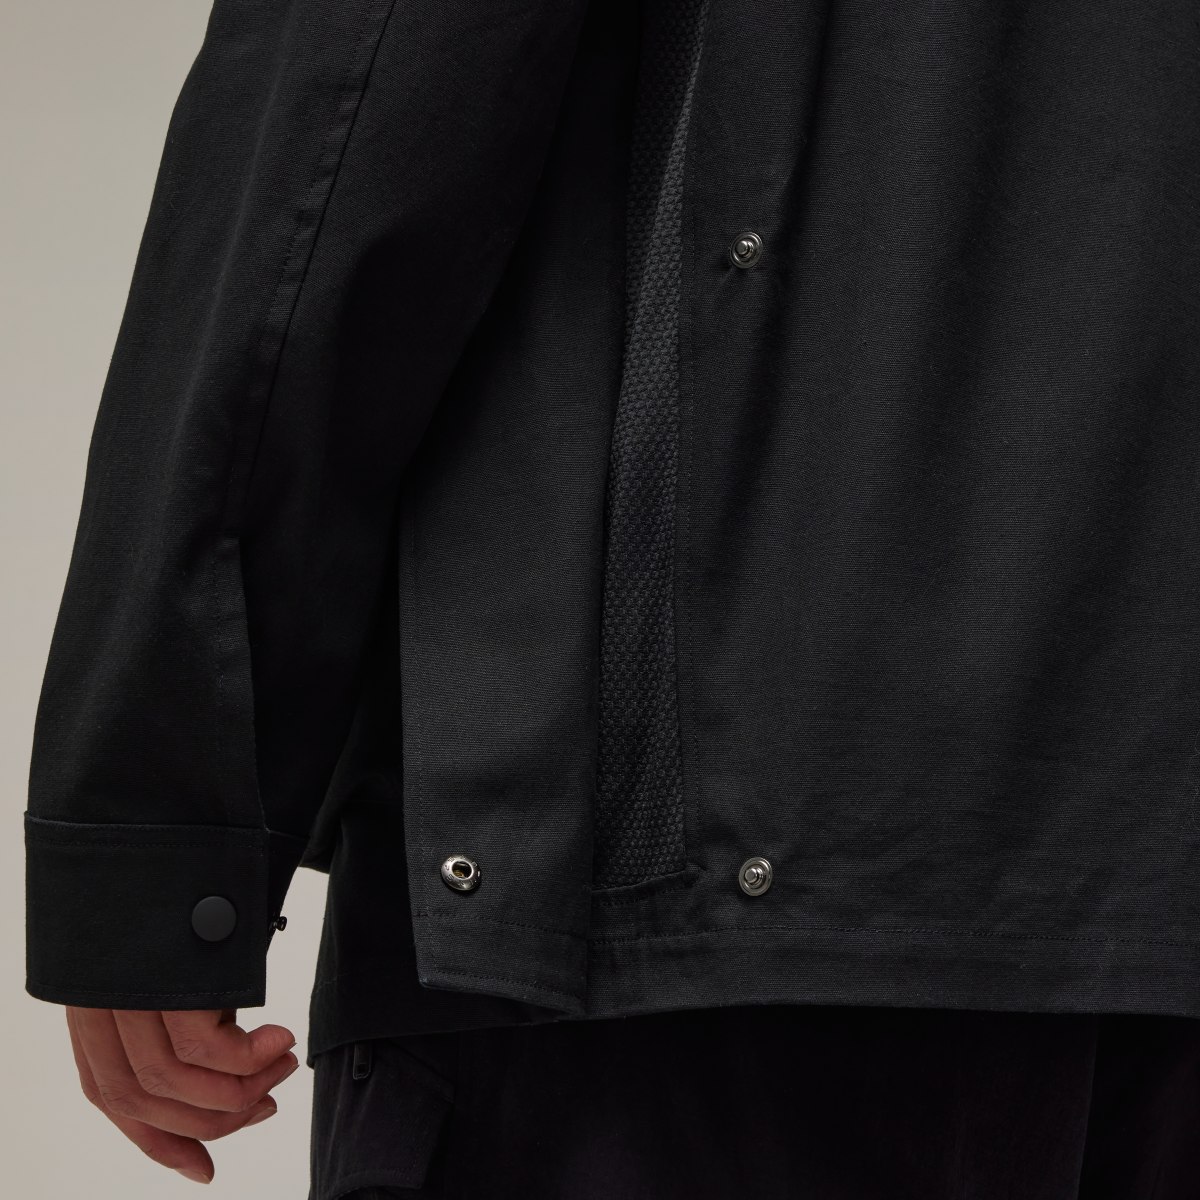 Adidas Y-3 Long Sleeve Pocket Overshirt. 7